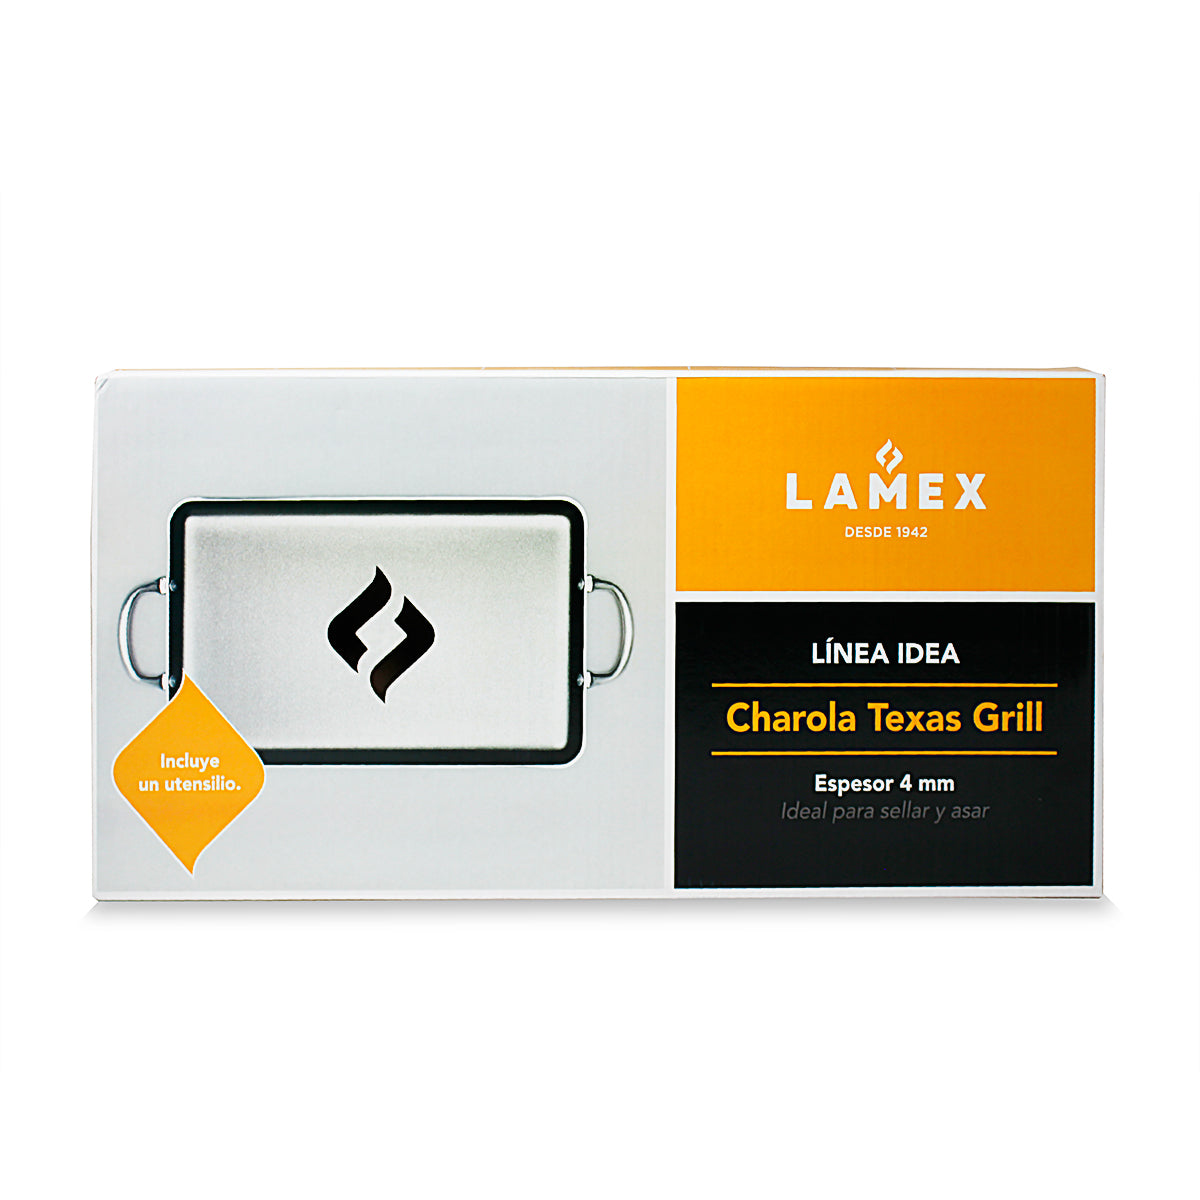 Plancha Charola Texas Grill Y Volteador Lamex 6501-2